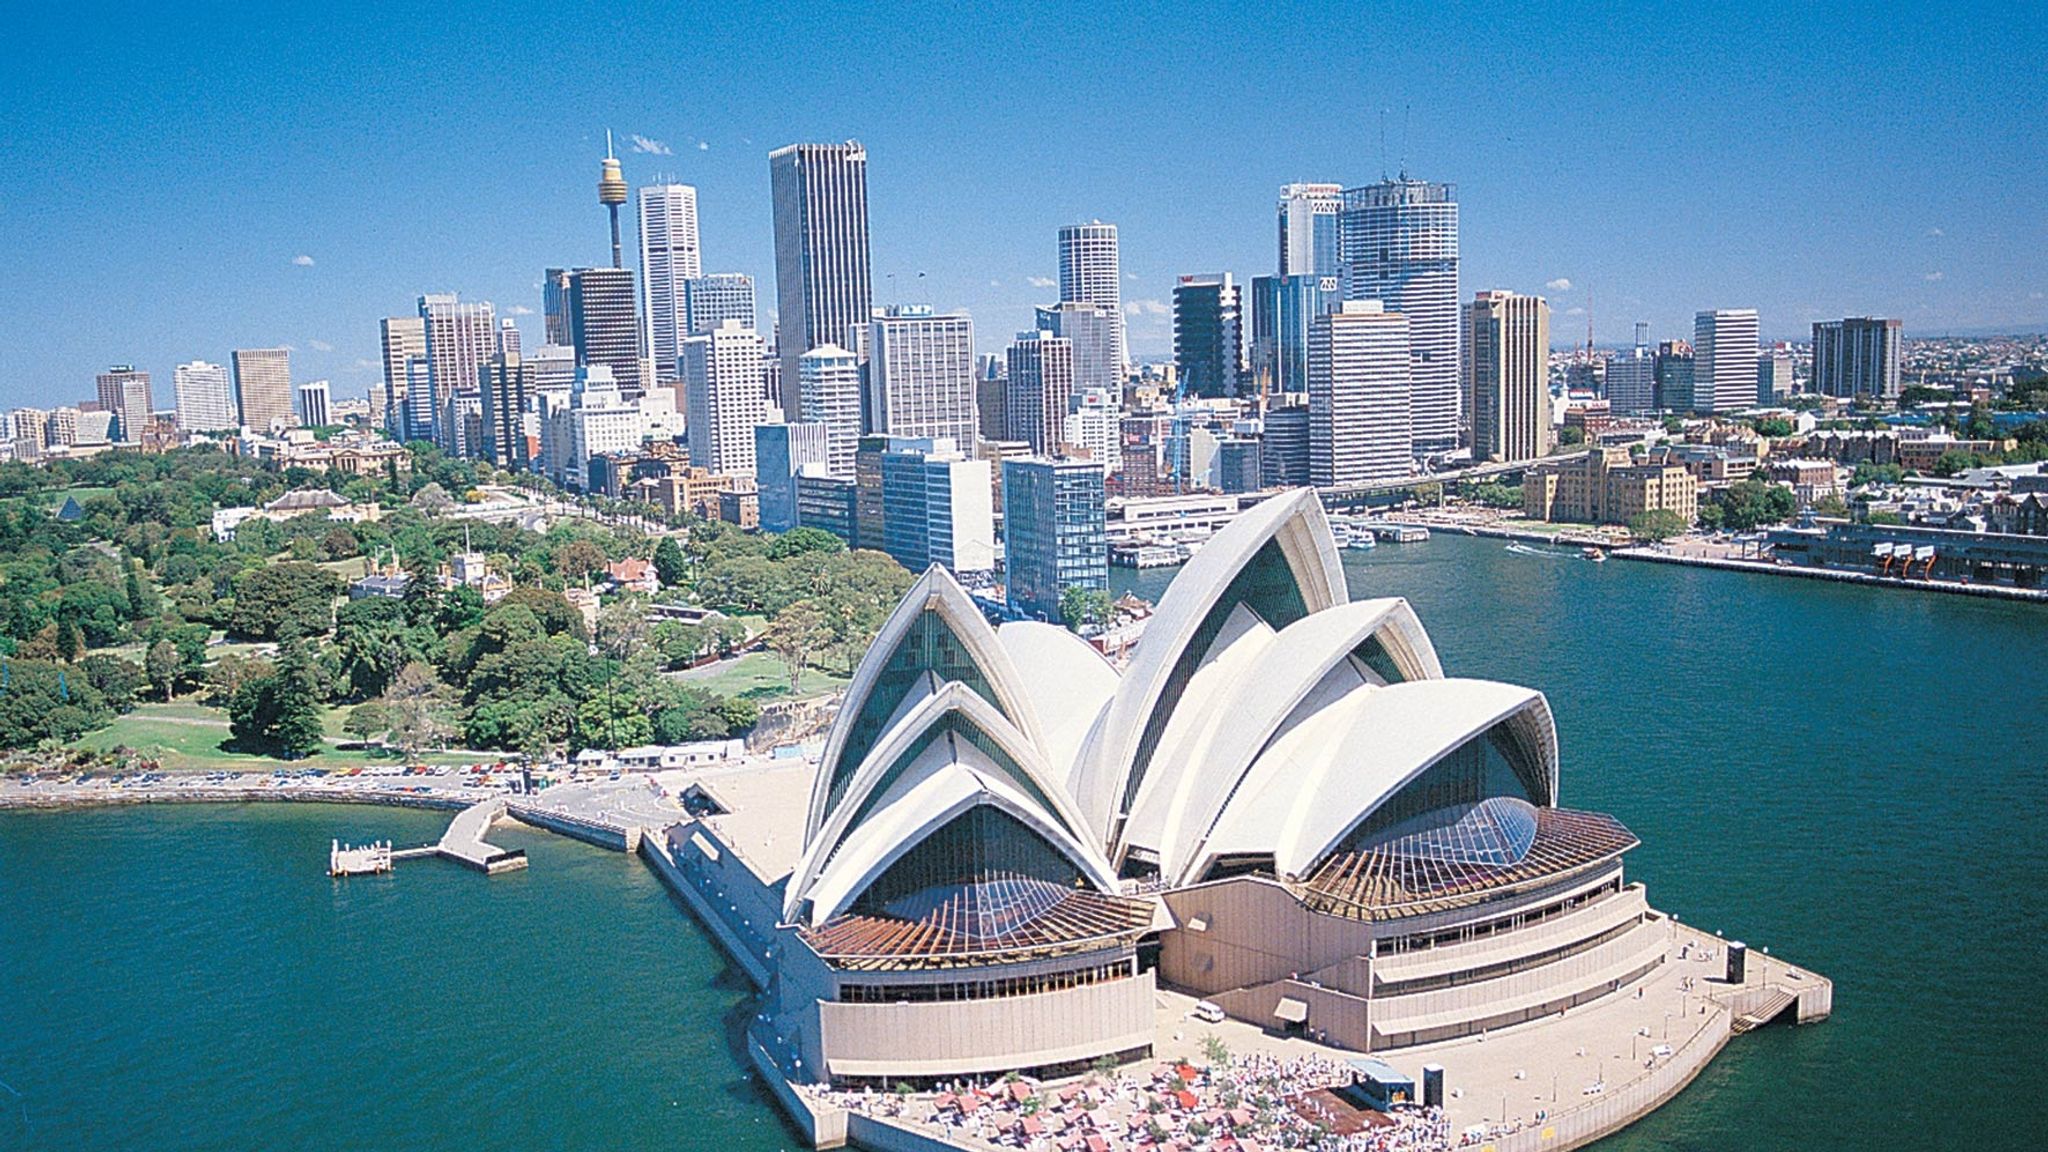 Достопримечательности каждых стран. Мельбурн оперный театр. Город Сидней в Австралии. Канберра Сидней. Столица Австралии Сидней Мельбурн.